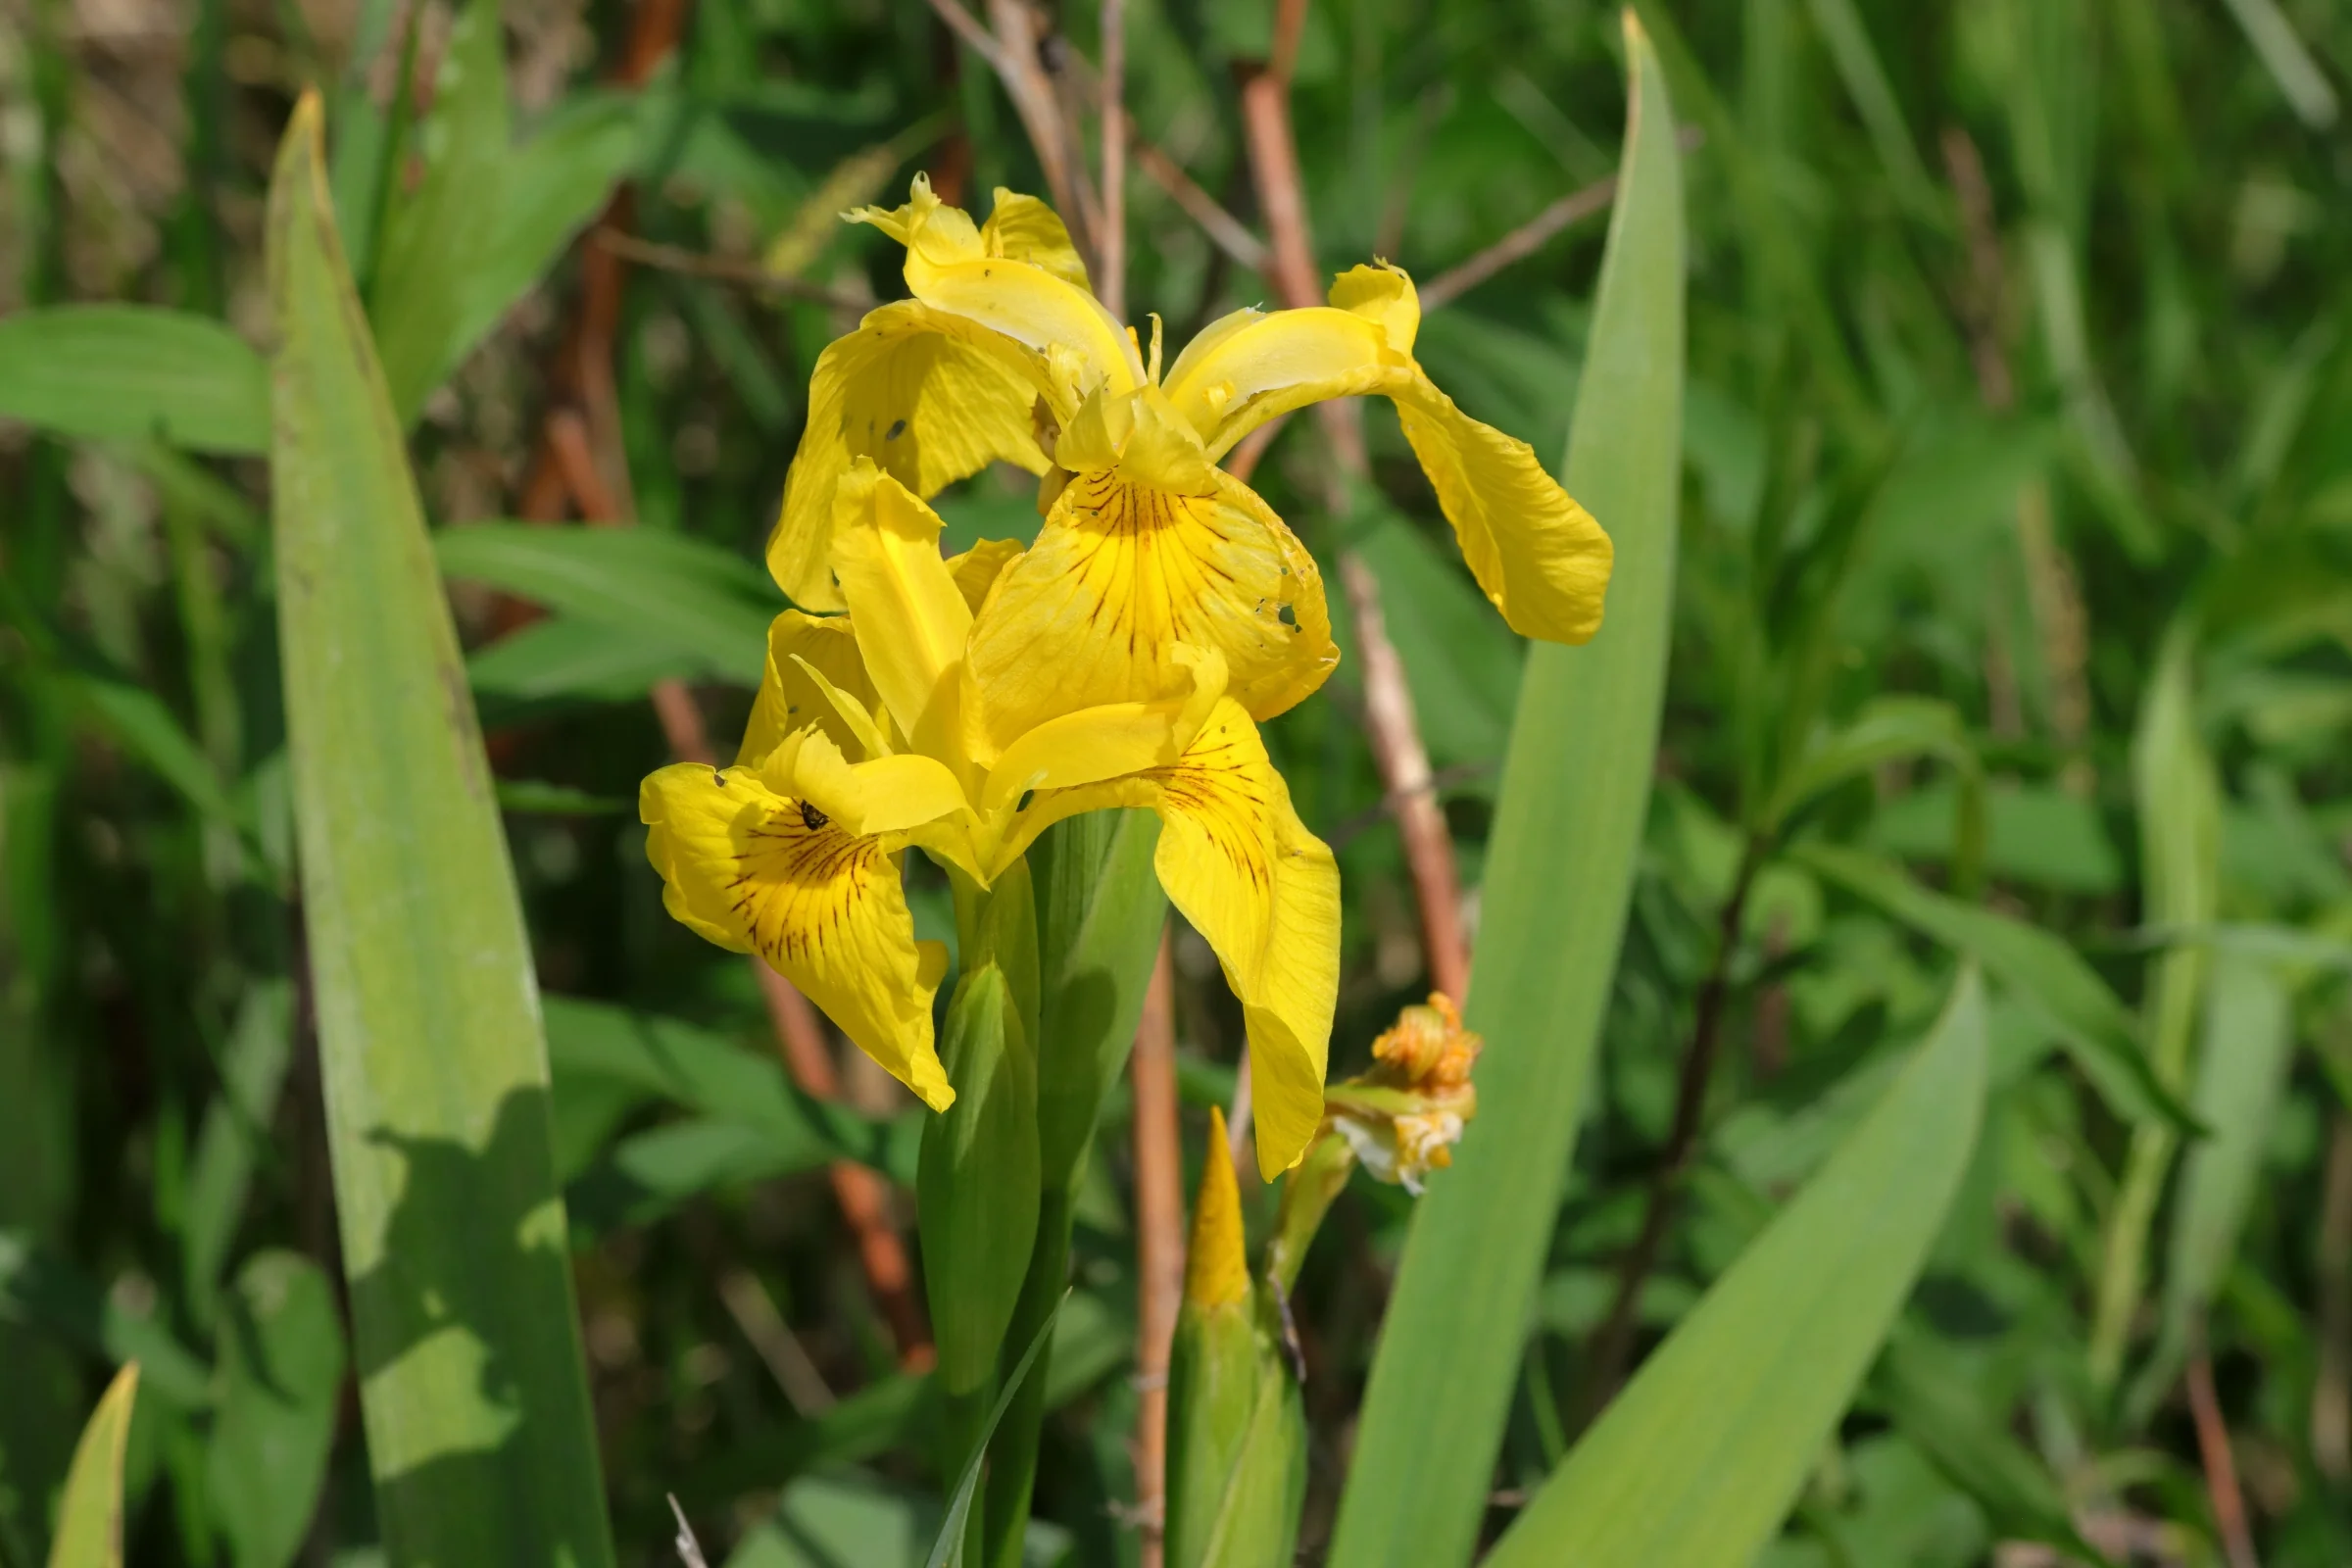 The yellow marsh iris in Eriskircher Ried